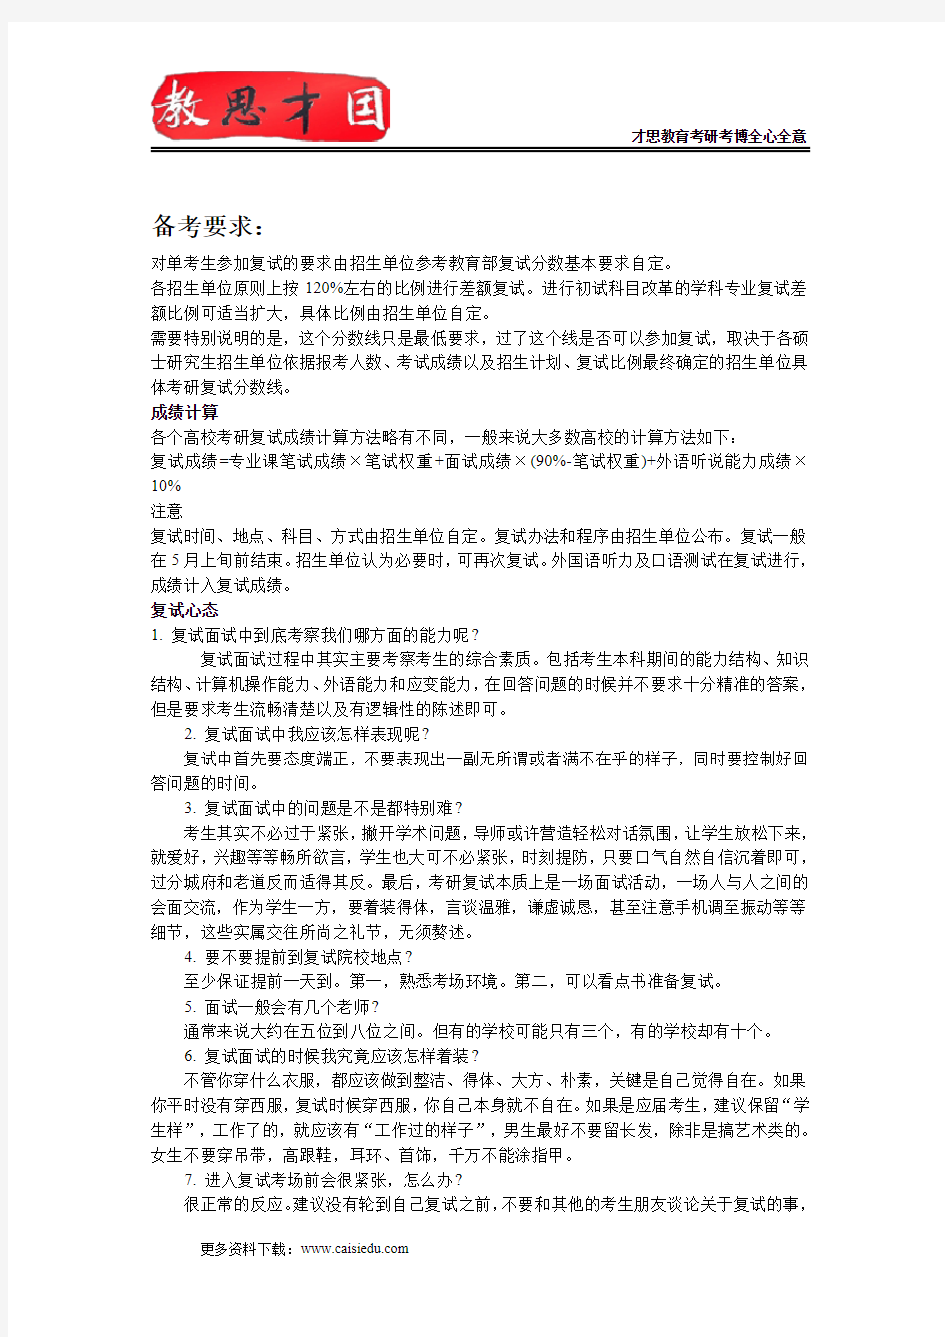 2015年北京理工大学883情报学基础考研大纲,考研参考书,考试形式